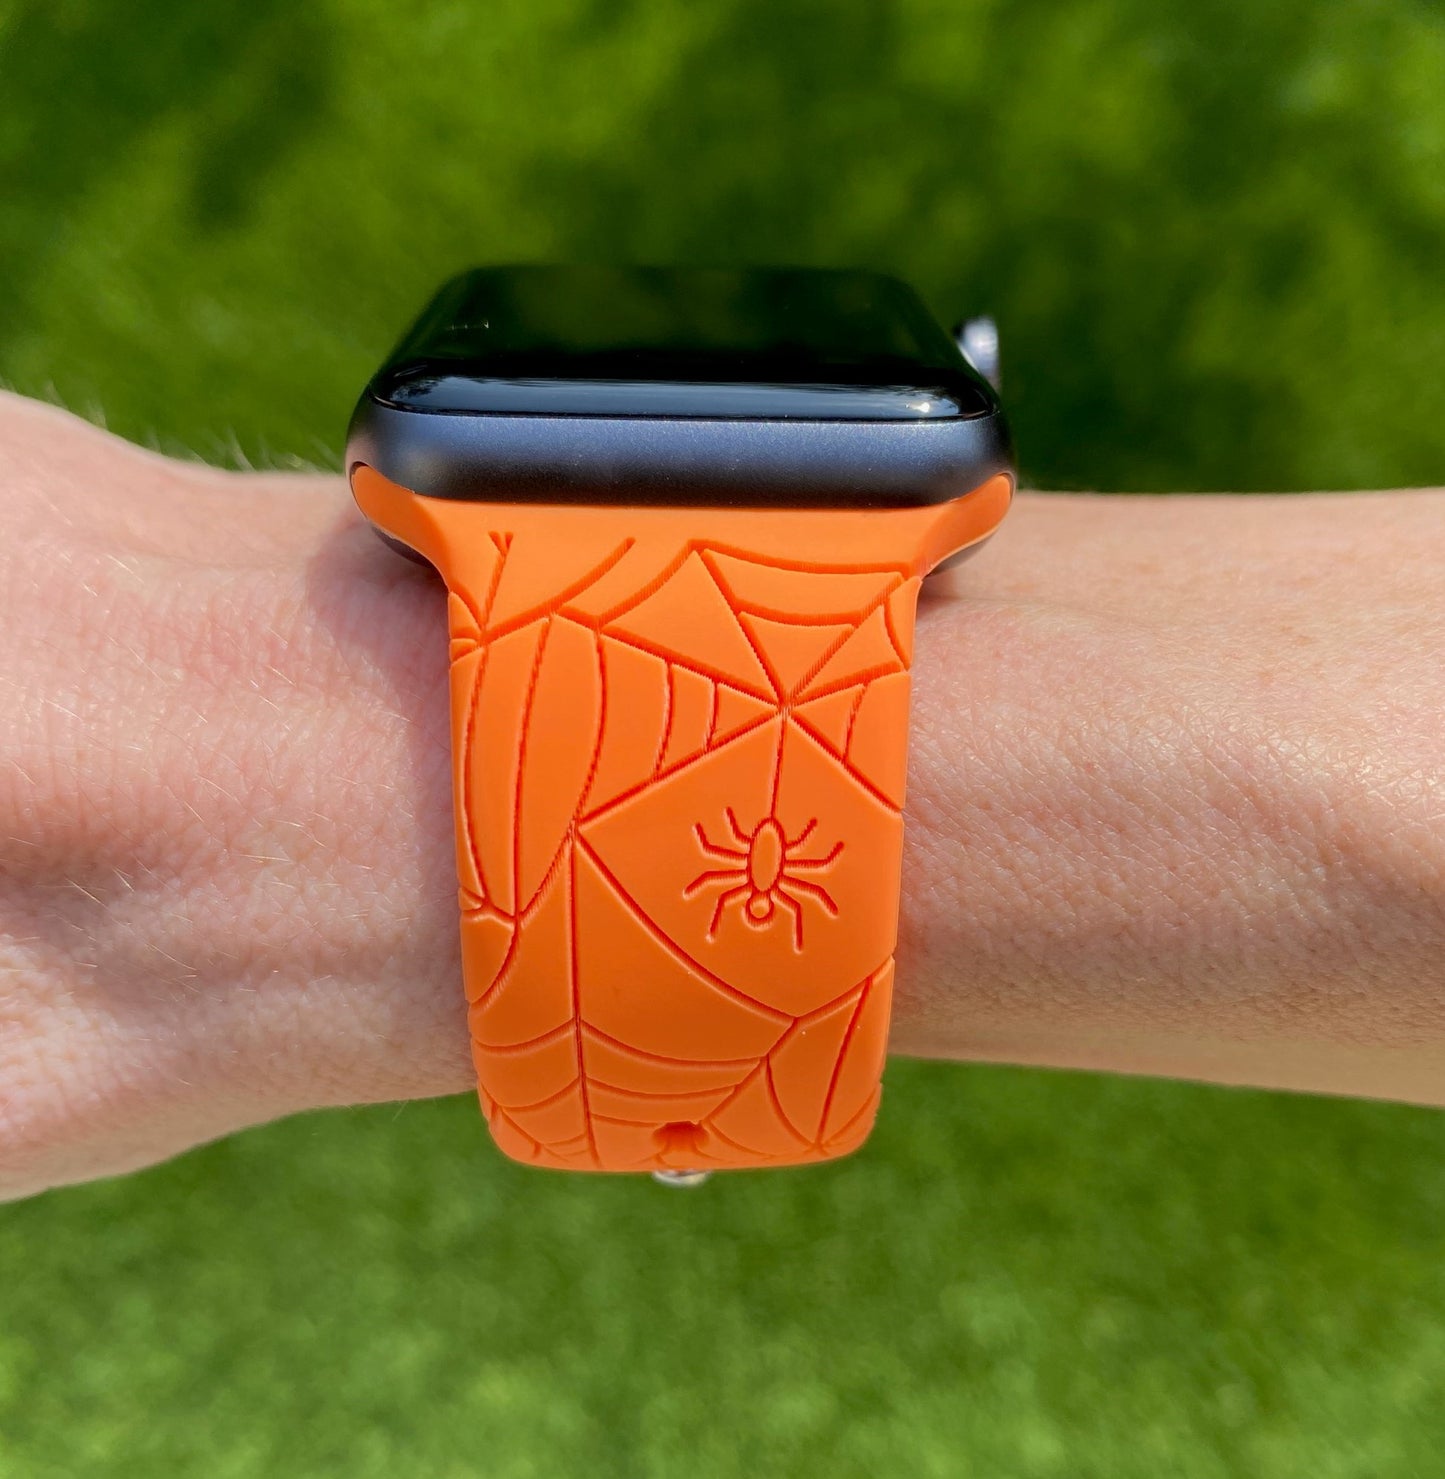 Orange Spider Web Apple Watch Band